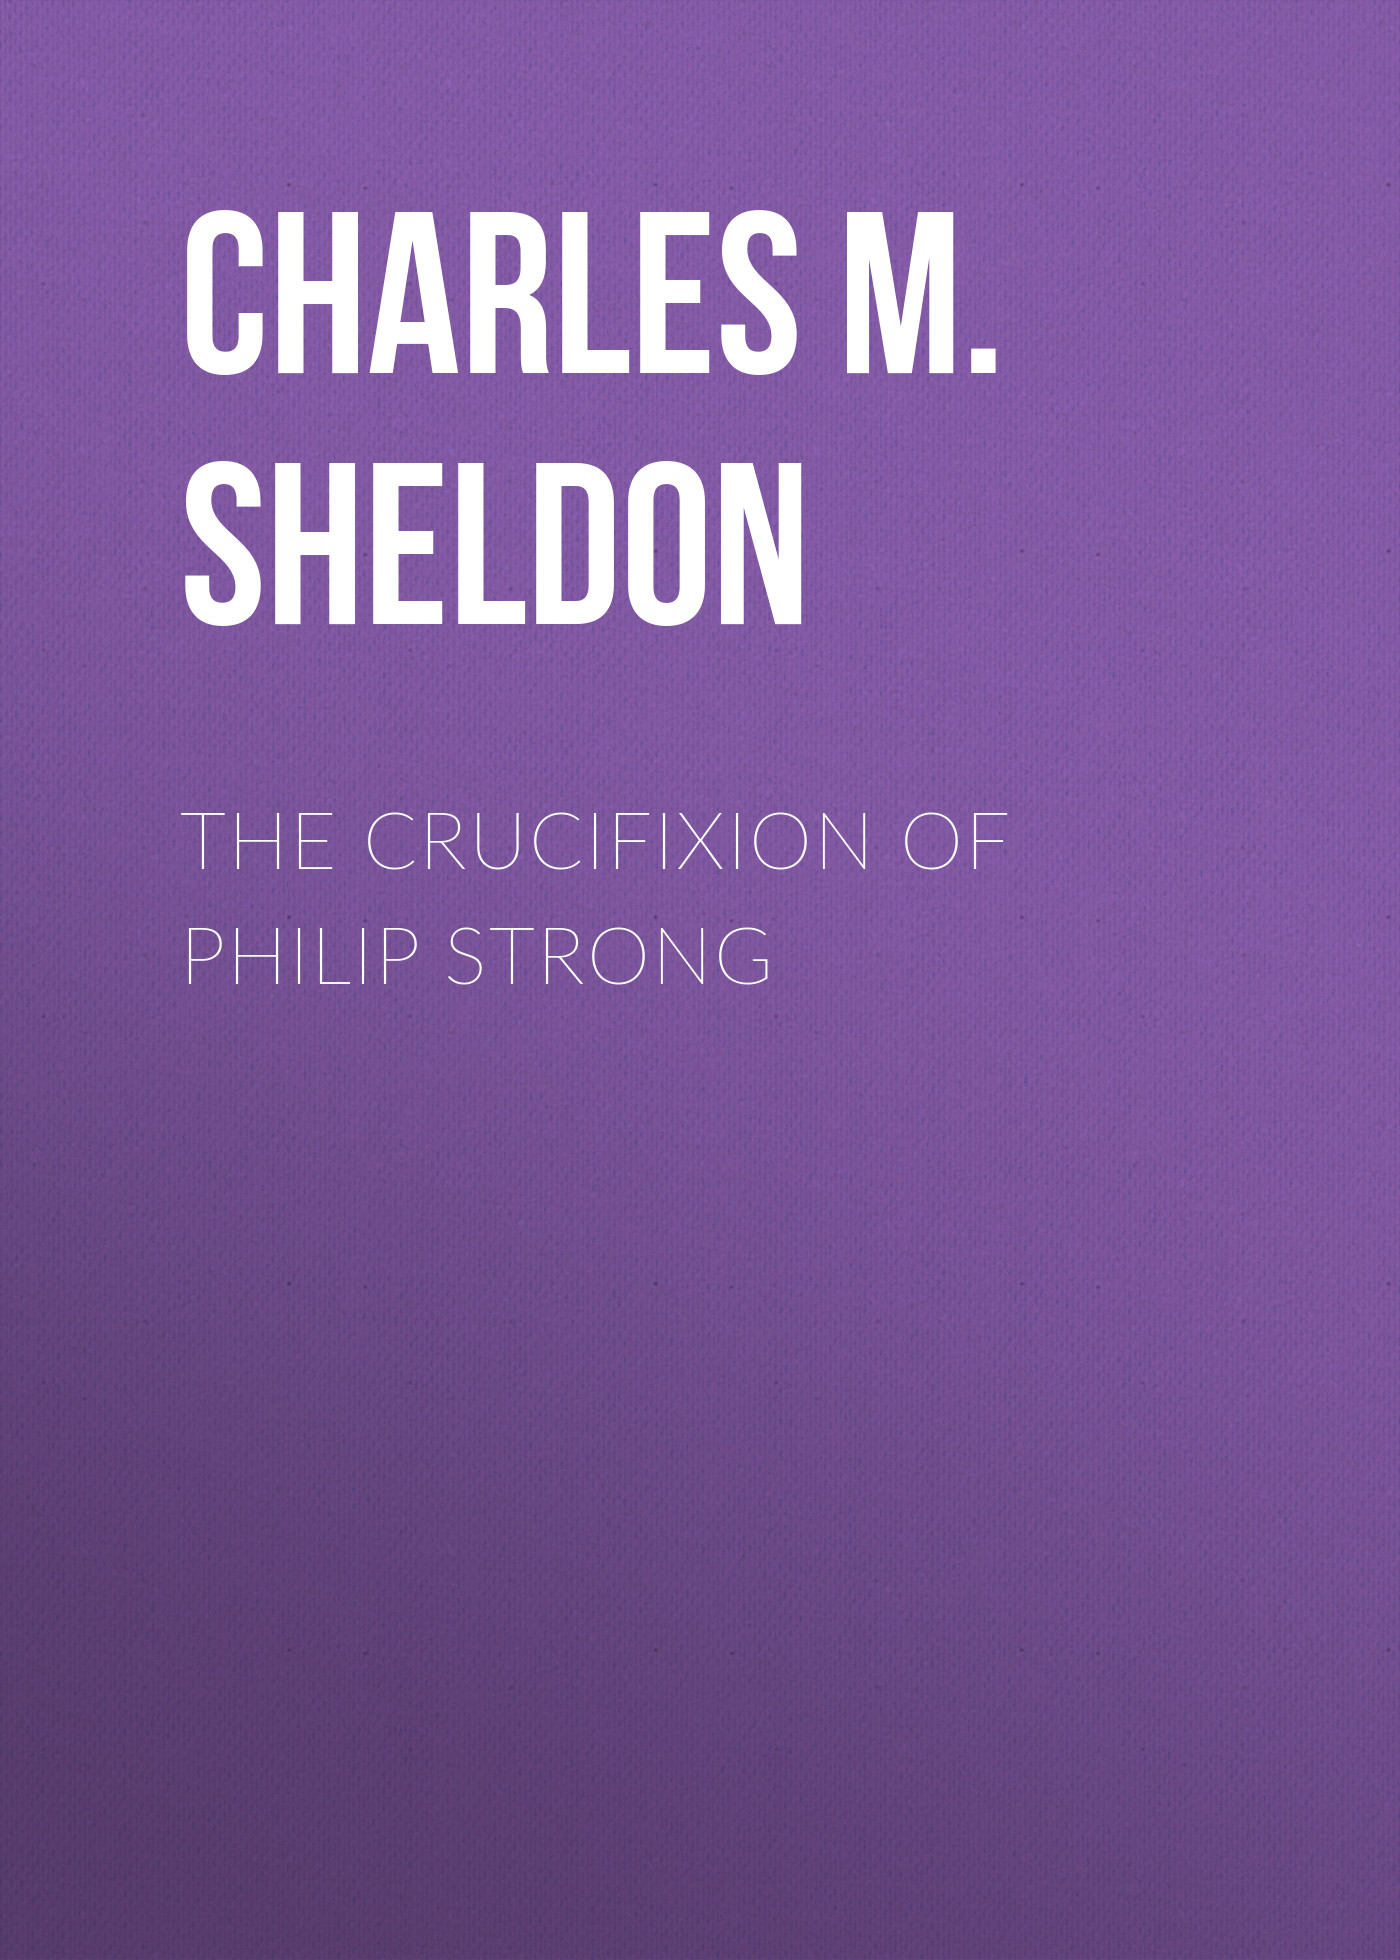 Книга The Crucifixion of Philip Strong из серии , созданная Charles M. Sheldon, может относится к жанру Словари, Религия: прочее, Зарубежная старинная литература. Стоимость книги The Crucifixion of Philip Strong  с идентификатором 38307169 составляет 0 руб.